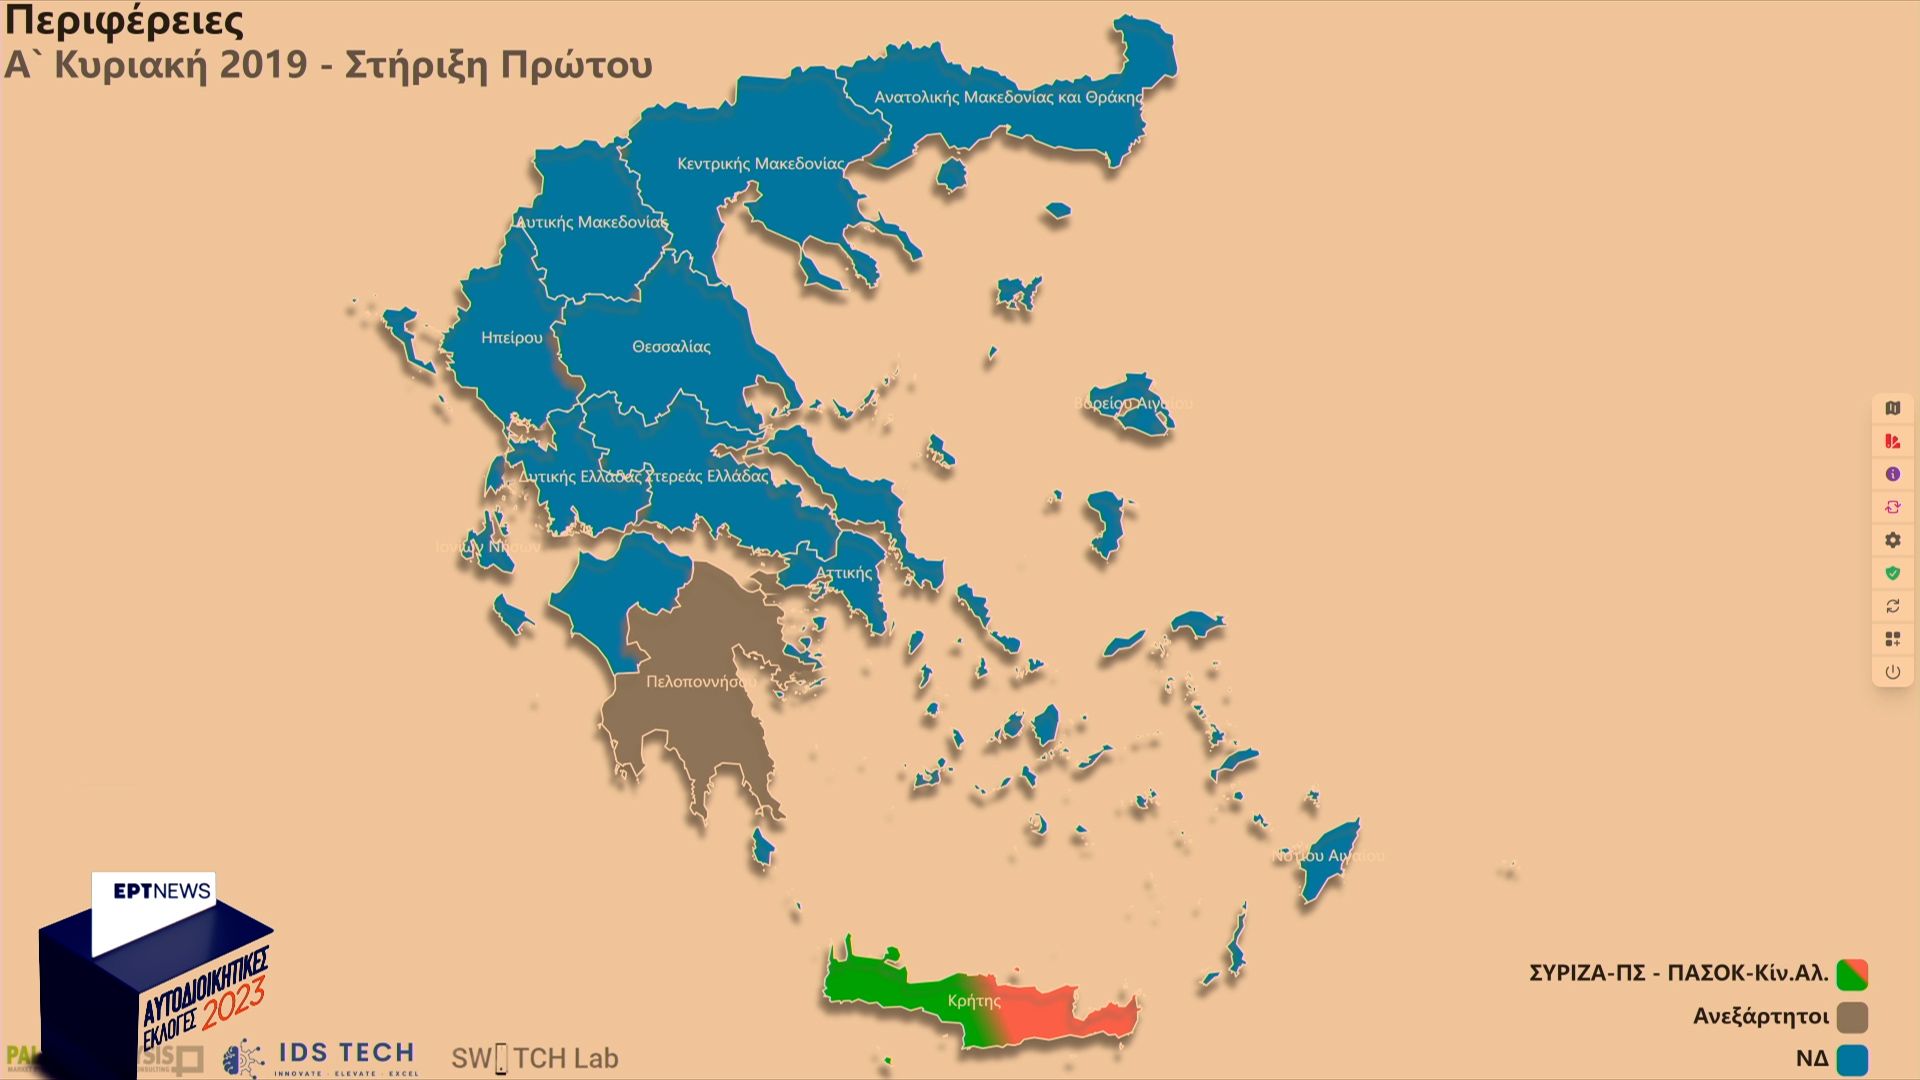 Αυτοδιοικητικές εκλογές στην ΕΡΤ: Πώς θα μεταδοθούν τα αποτελέσματα – Ο διαδραστικός υπερσύγχρονος χάρτης